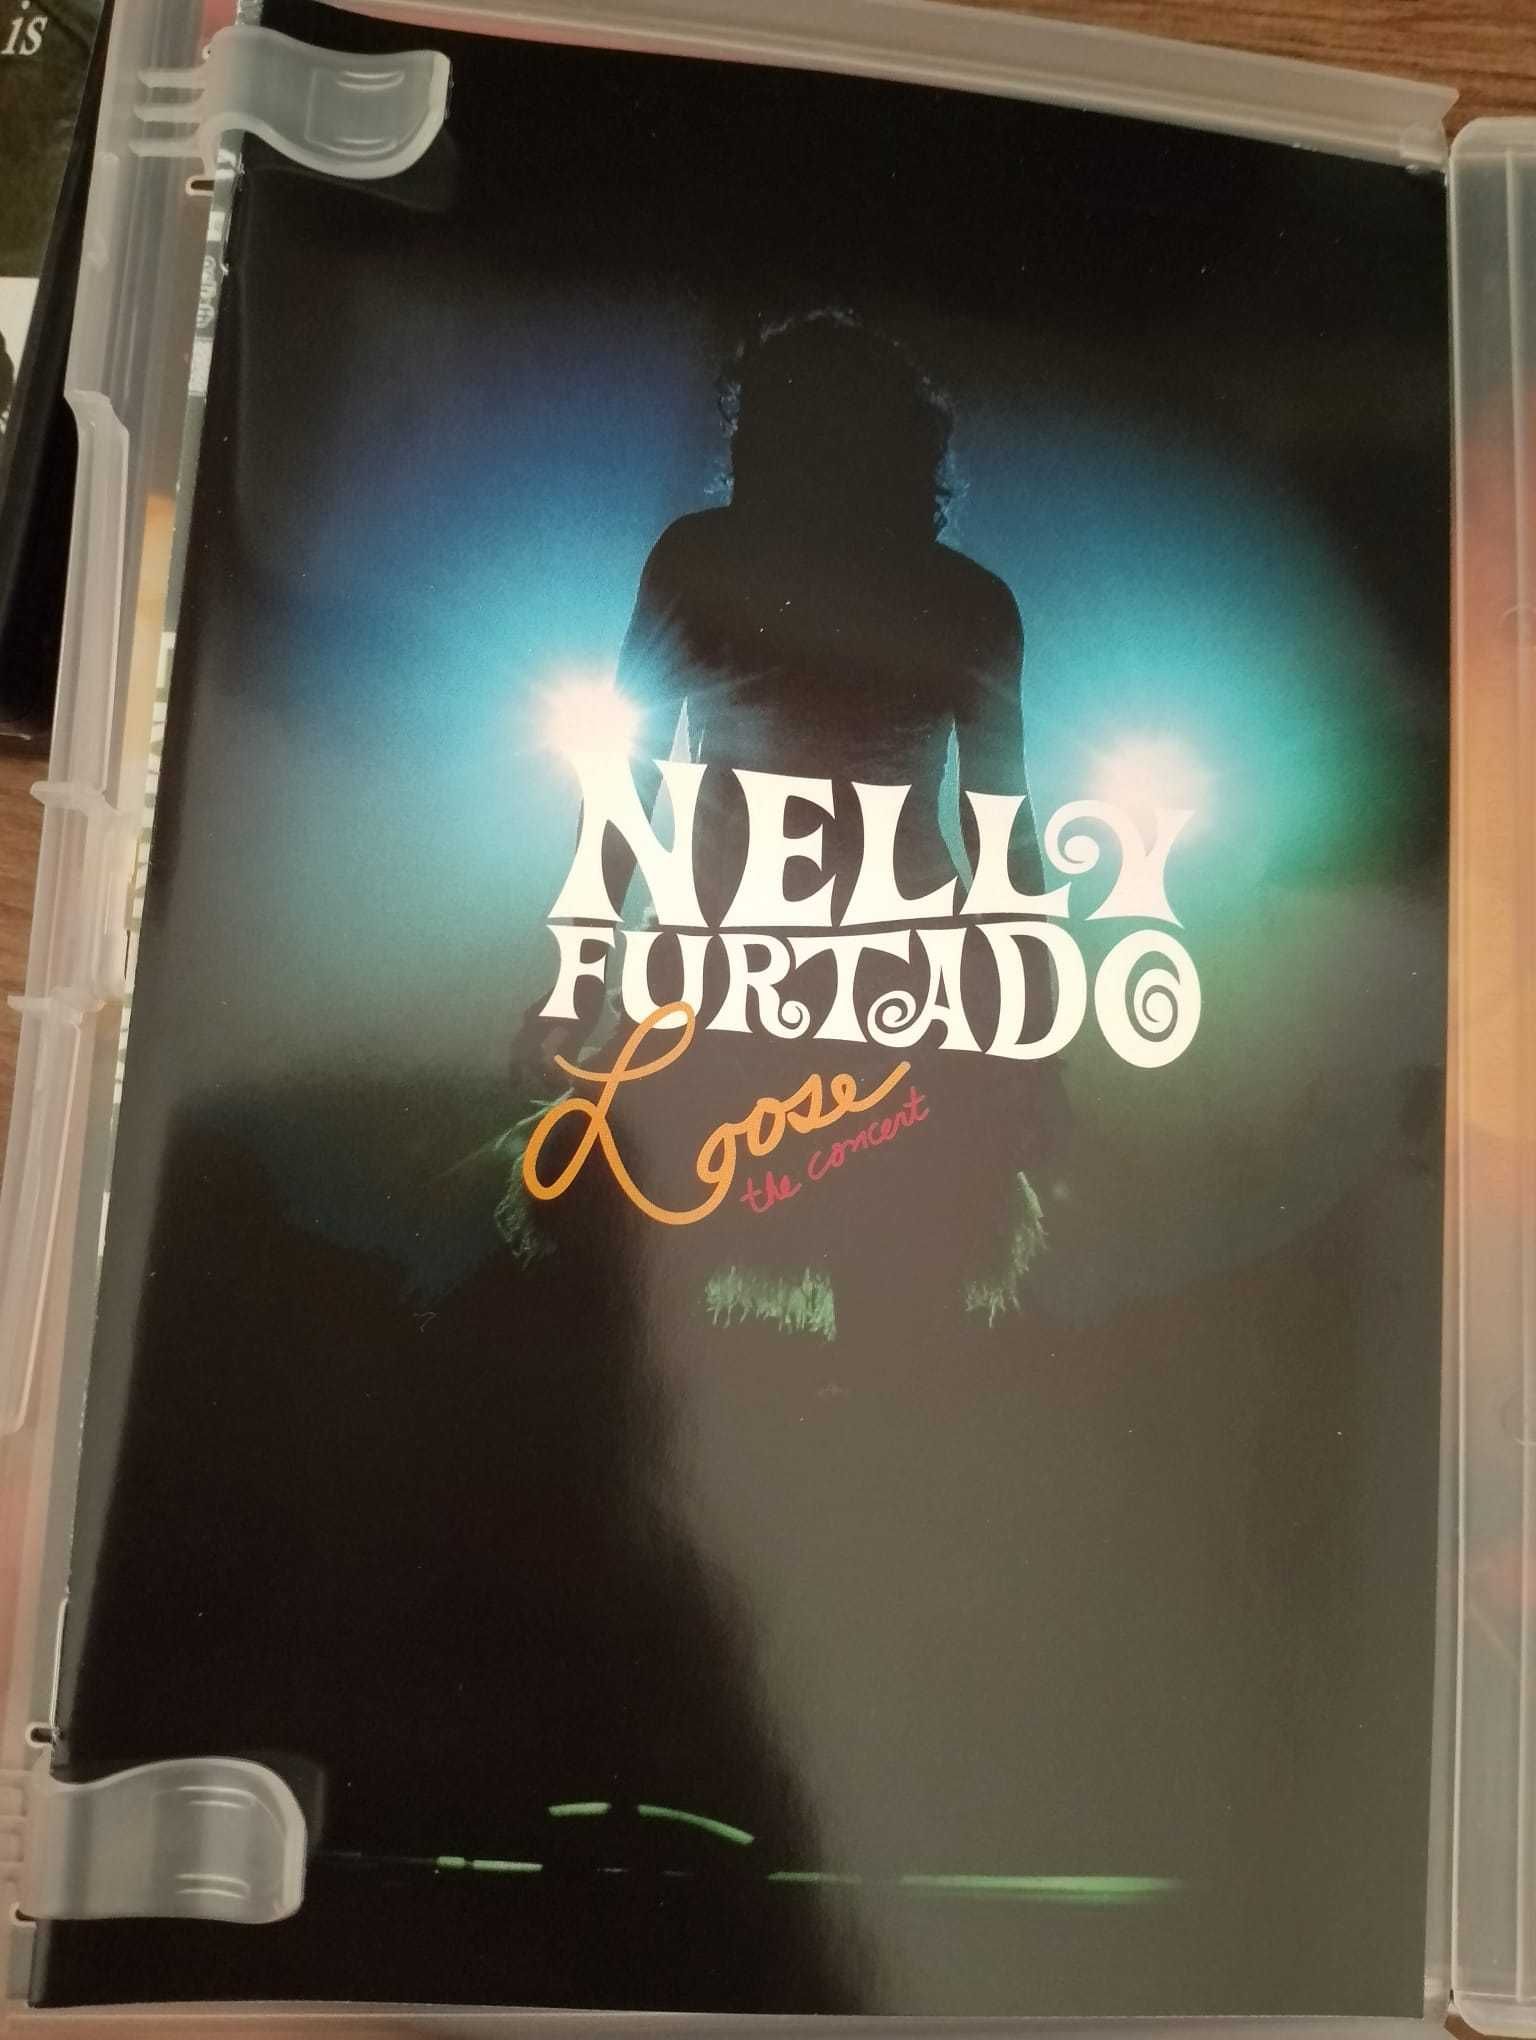 Nelly Furtado concert Toronto, Canada